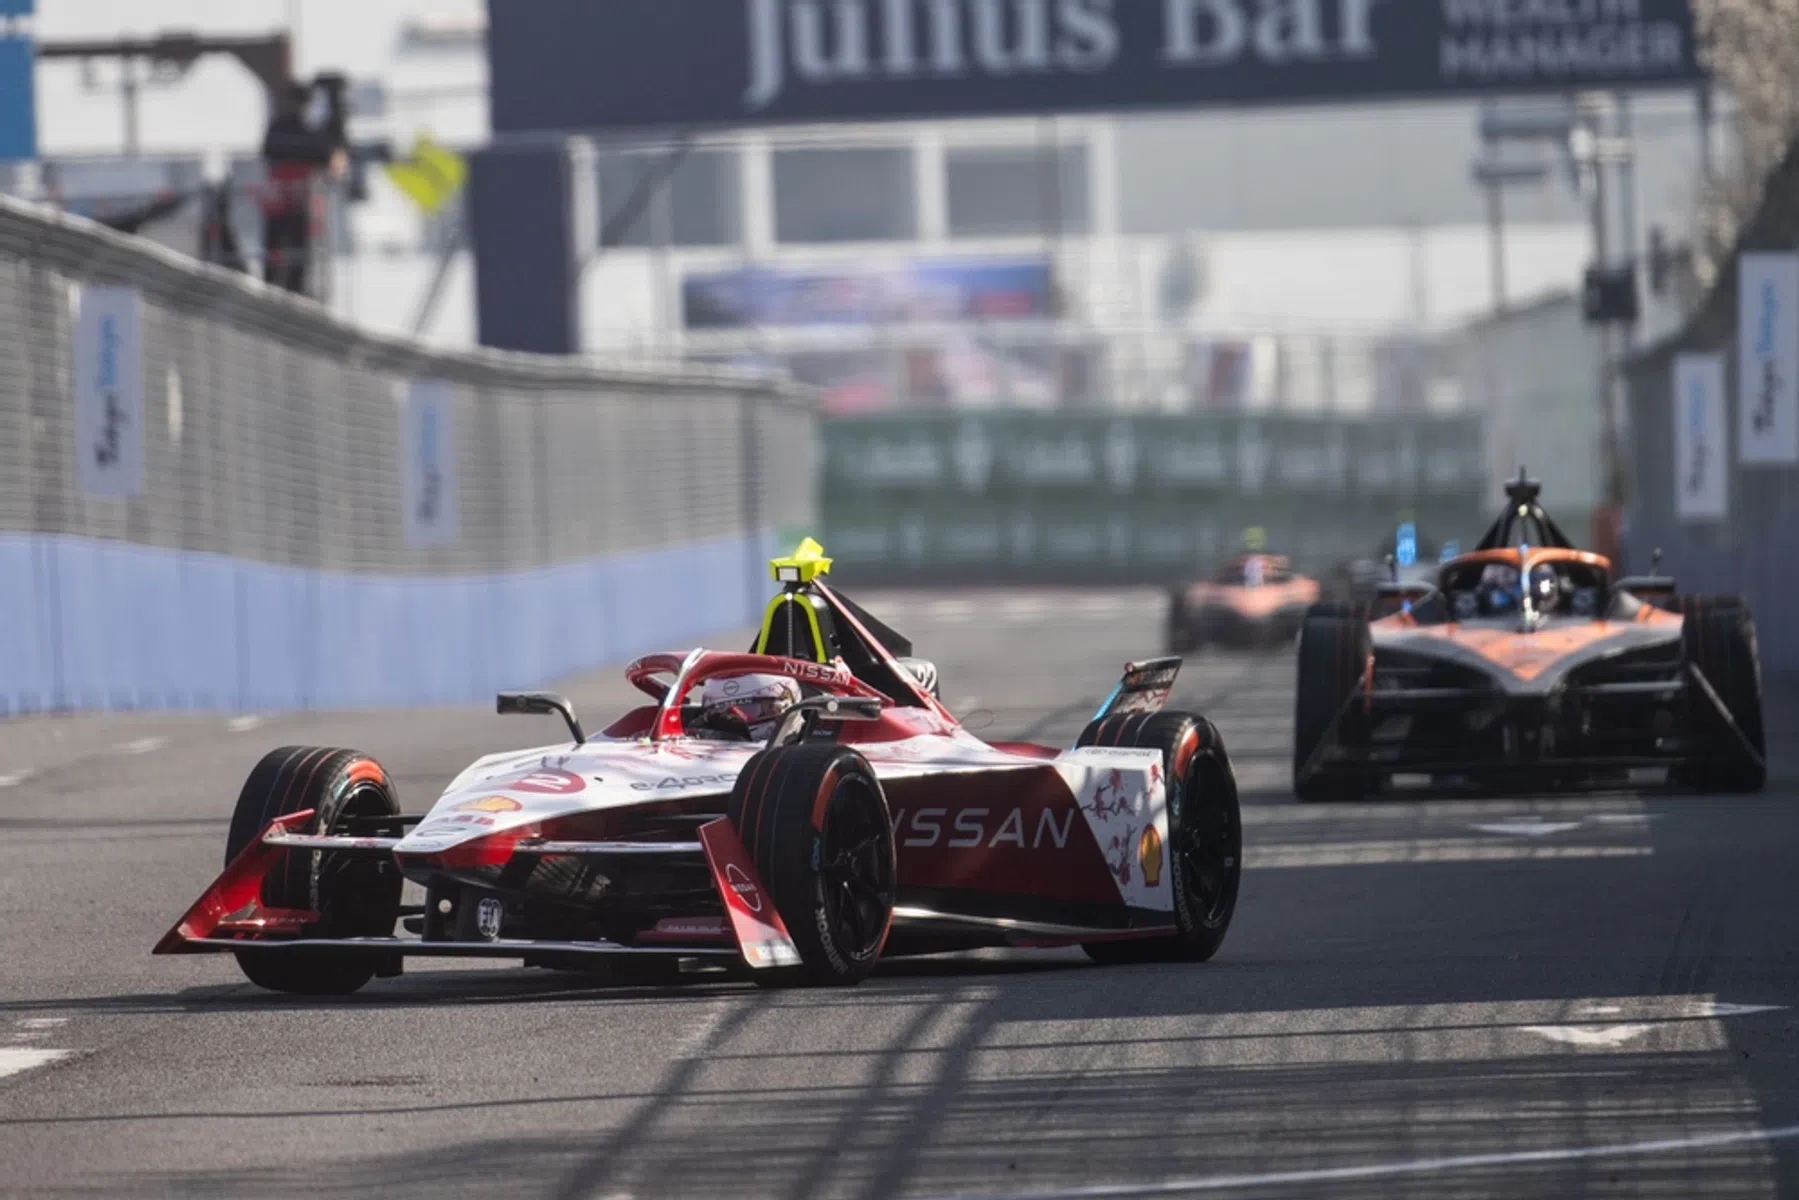 Zusammenfassung des japanischen Formel E E-Prix, Gunther ist Sieger